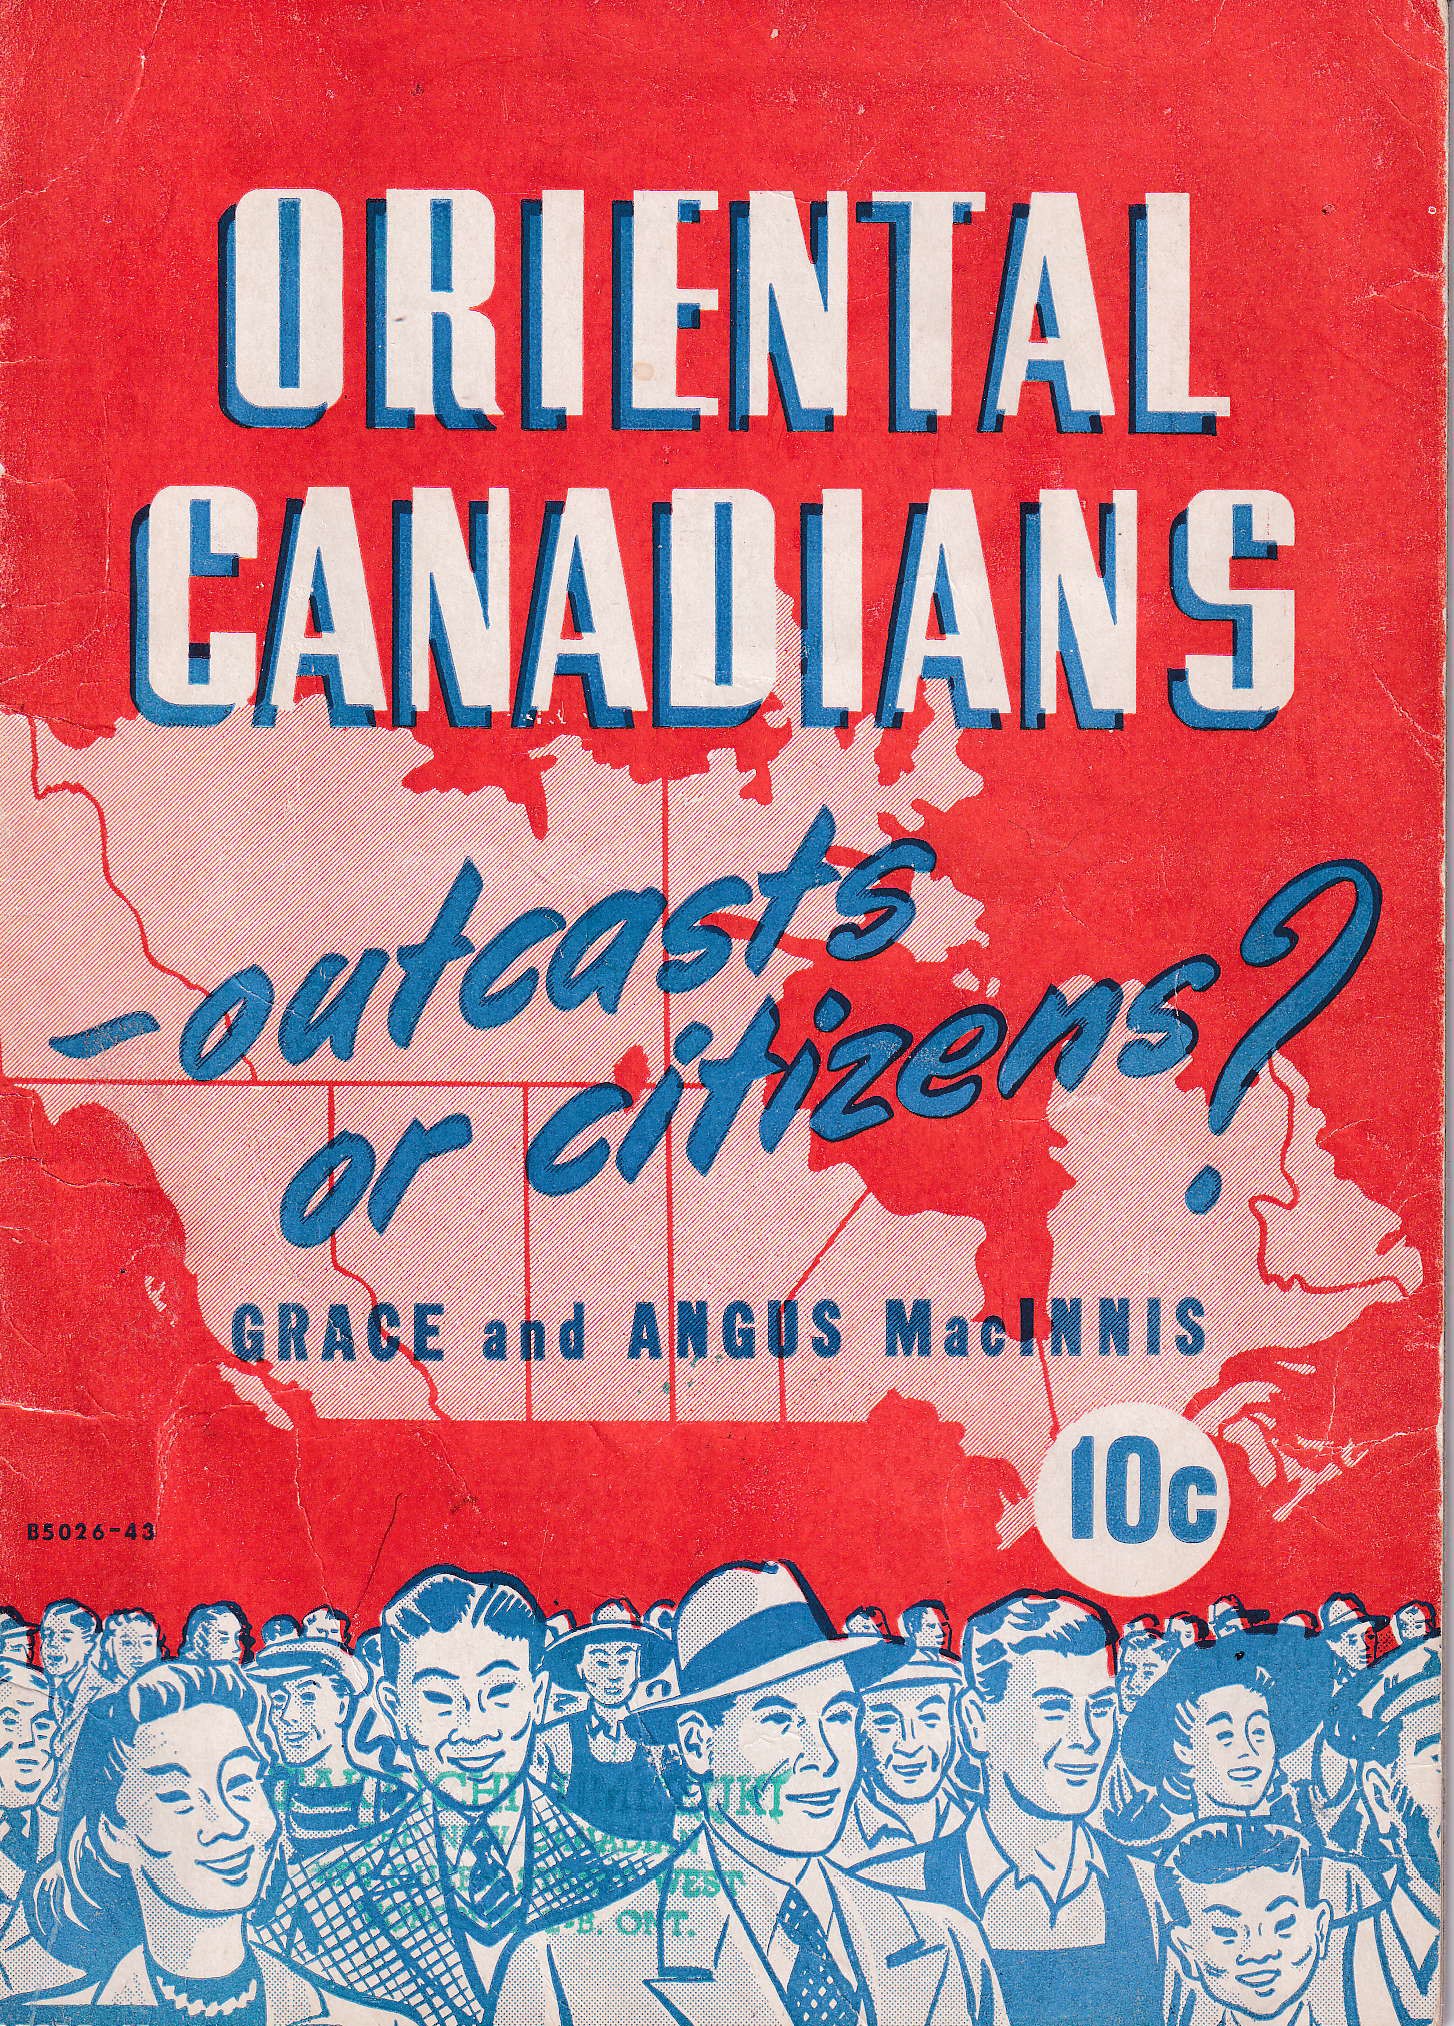  Livret intitulé Canadiens de l'Est - parias ou citoyens?